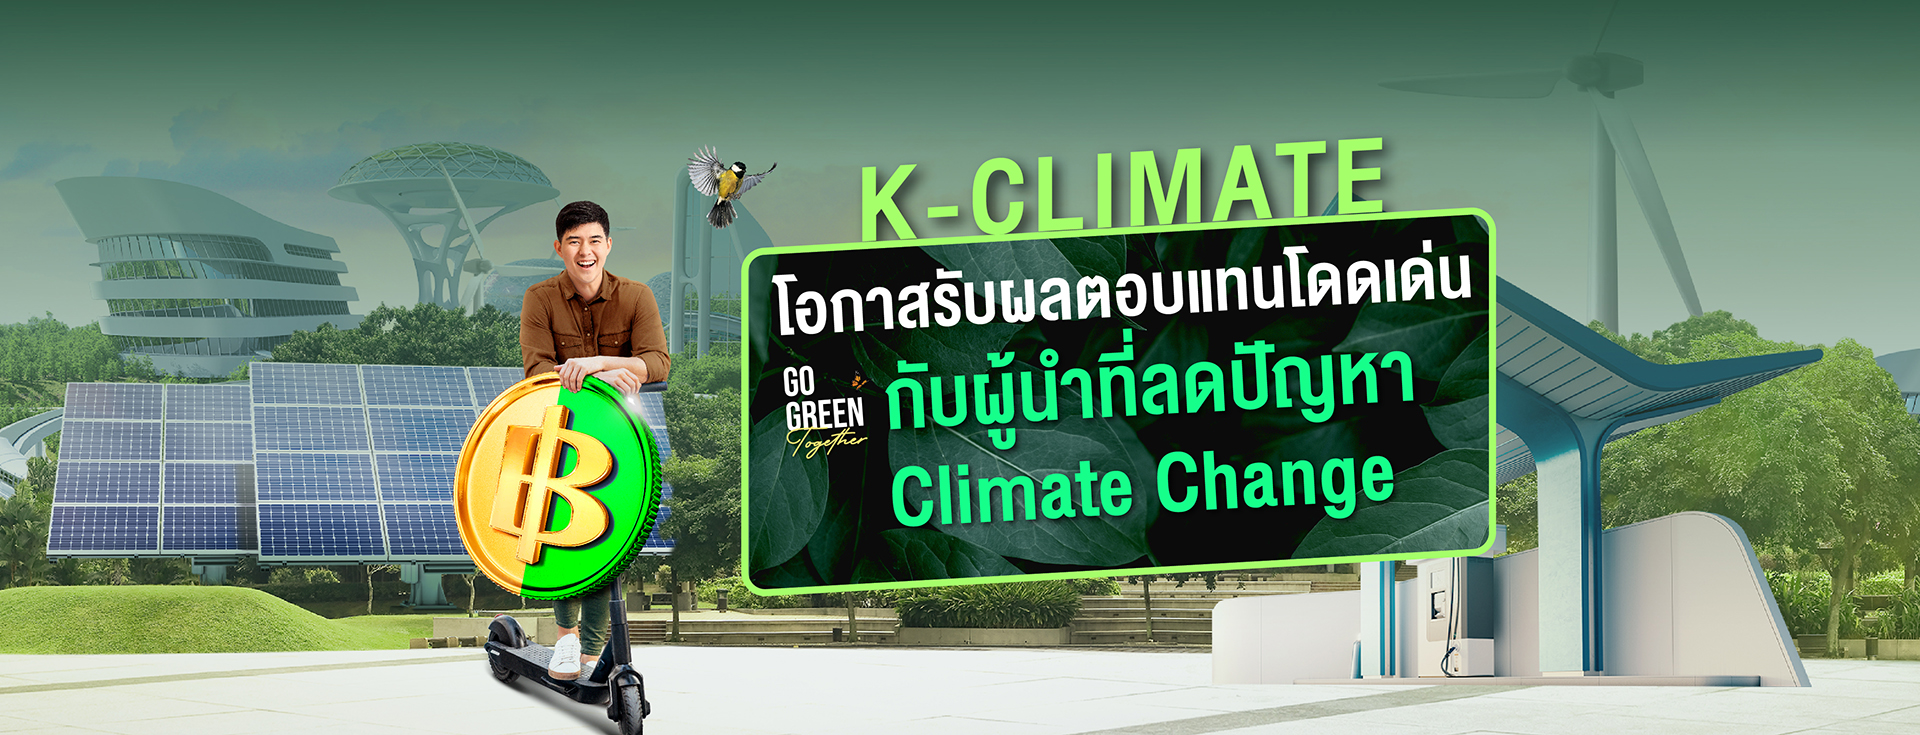 กองทุน K-CLIMATE แนะนำจากกสิกรไทย ลงทุนเพื่อสิ่งแวดล้อม แก้ไขปัญหา Climate Change